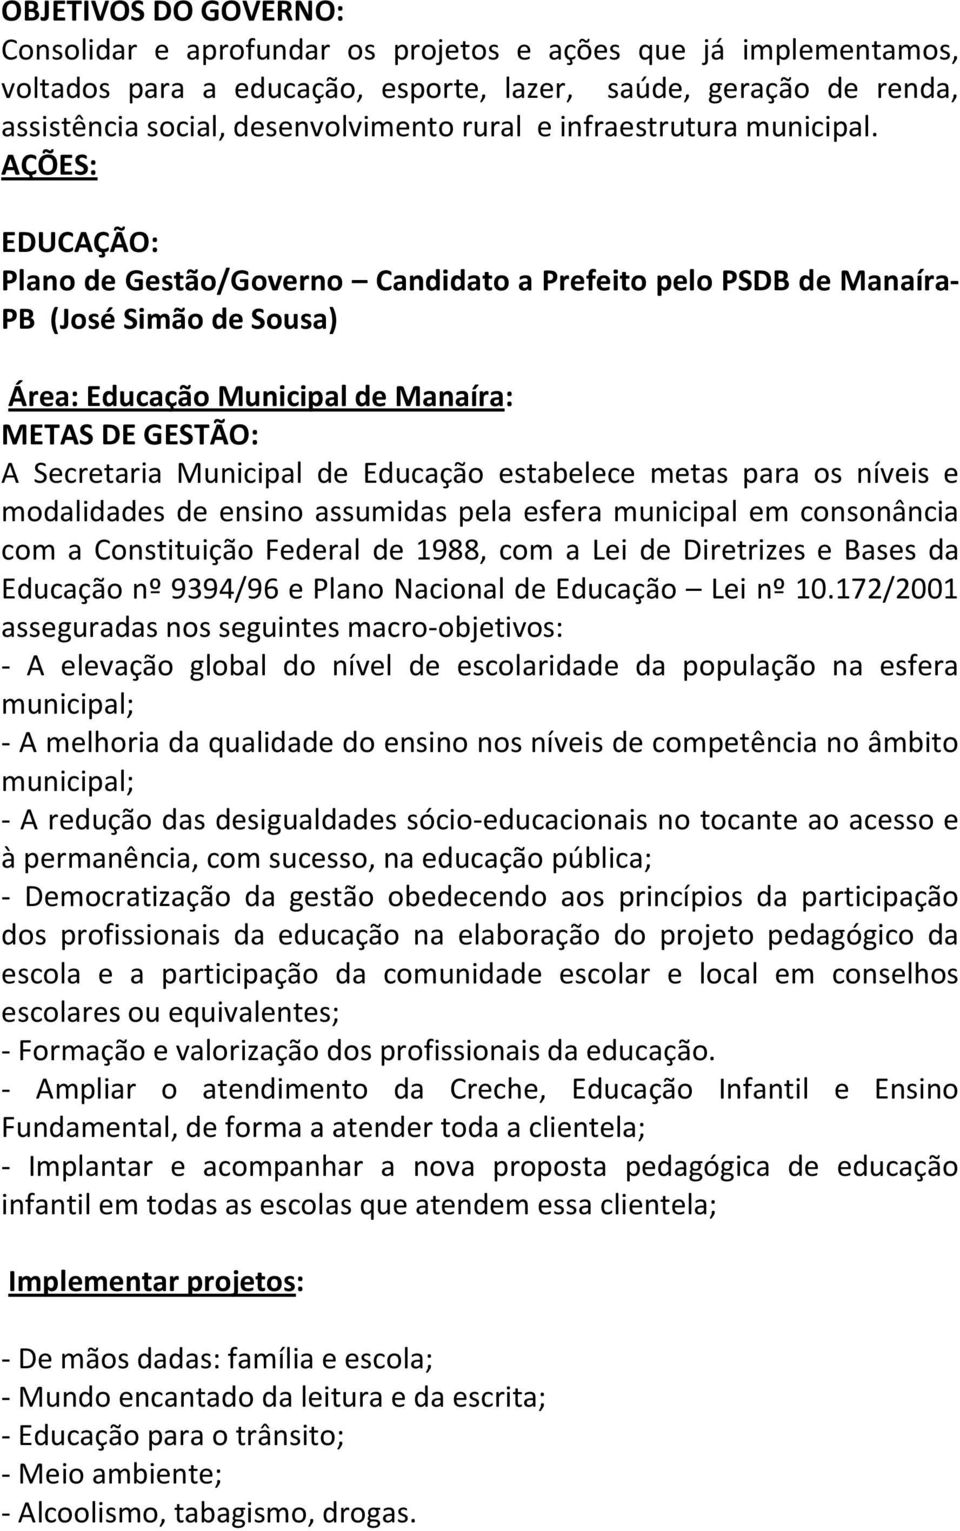 AÇÕES: EDUCAÇÃO: Plano de Gestão/Governo Candidato a Prefeito pelo PSDB de Manaíra- PB (José Simão de Sousa) Área: Educação Municipal de Manaíra: METAS DE GESTÃO: A Secretaria Municipal de Educação